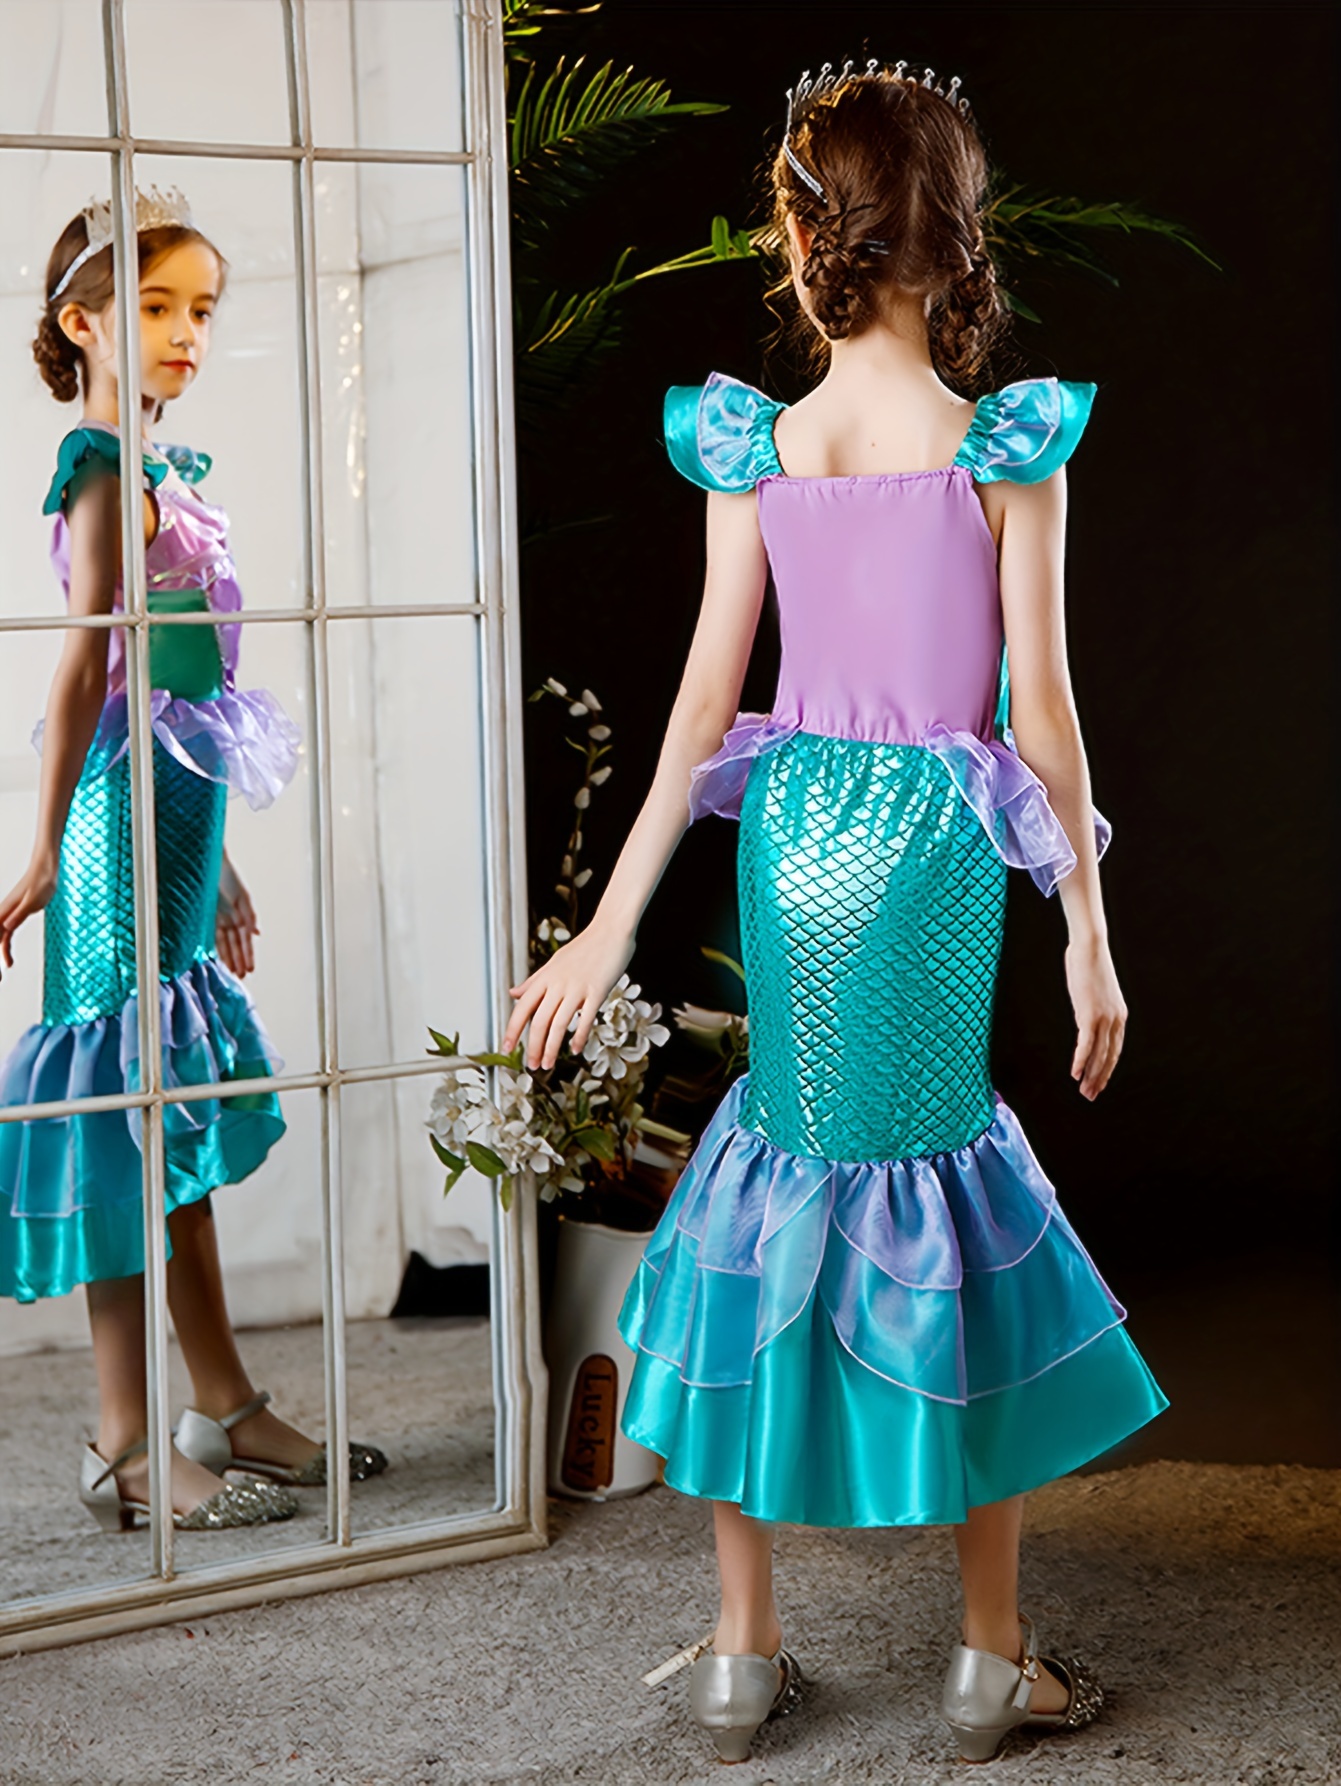 Disfraz de princesa Sirenita para niñas, peluca de sirena, disfraz de  princesa Ariel Cosplay para fiesta de cumpleaños, disfraz de Halloween